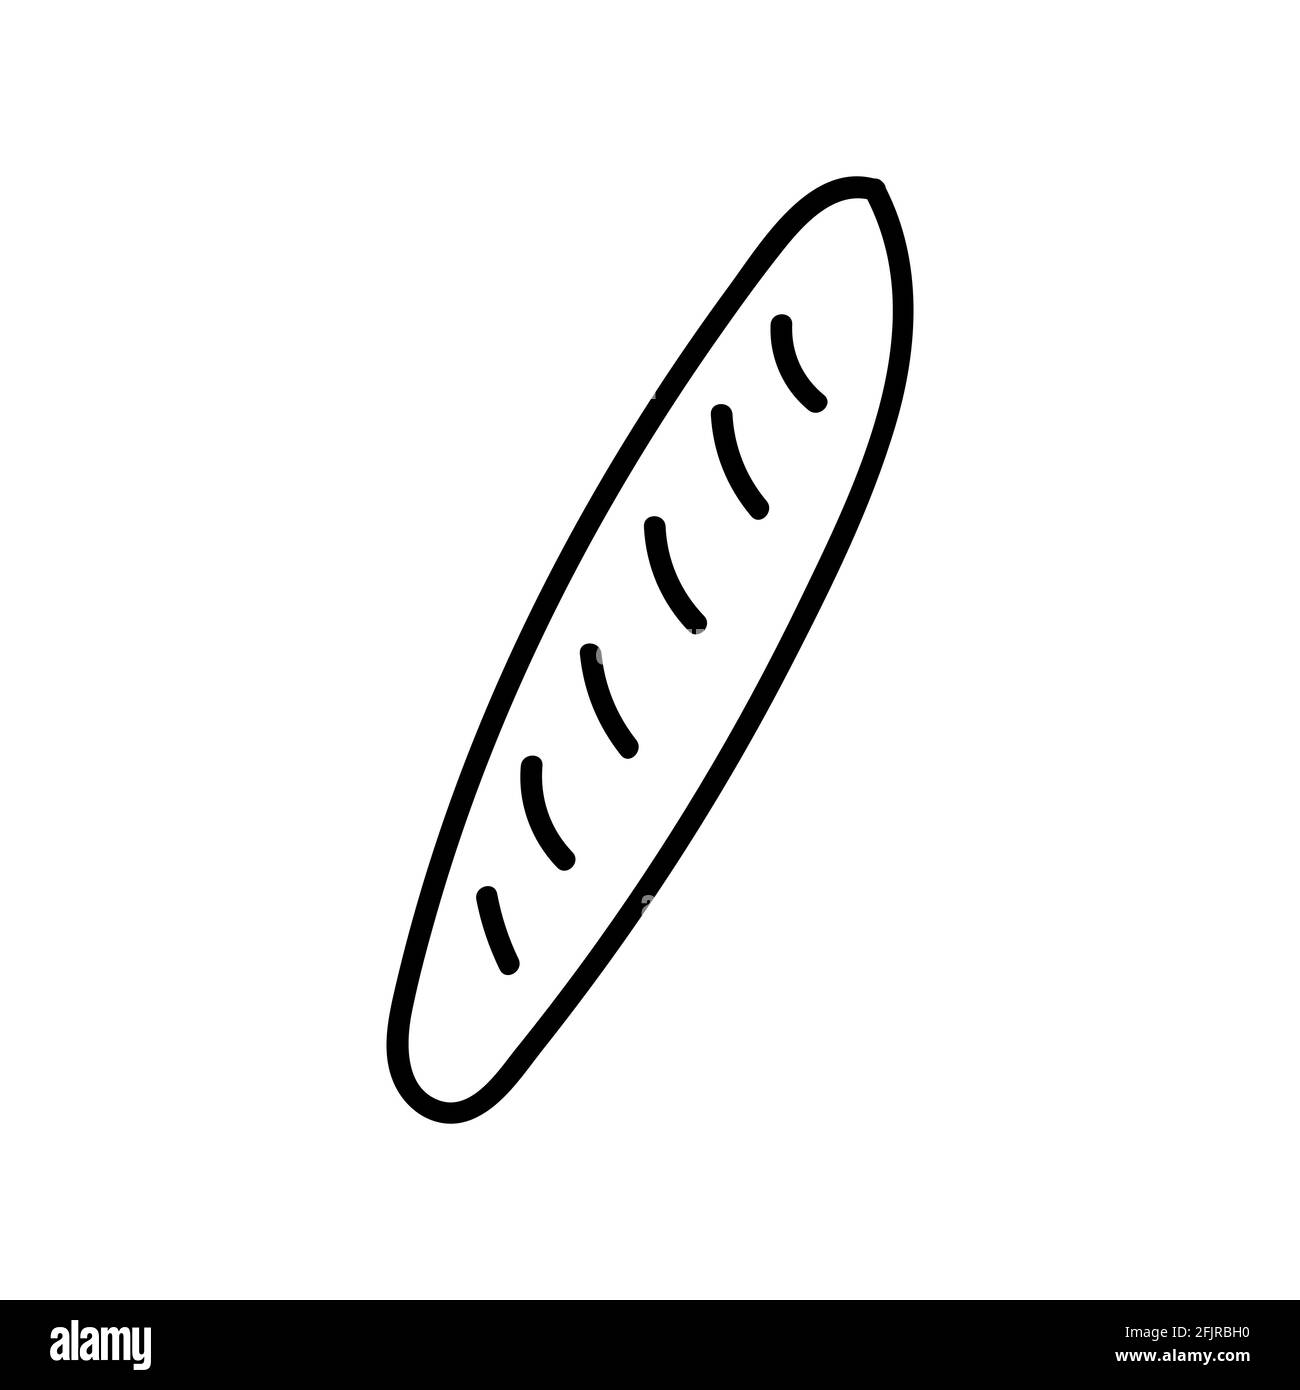 Baguette francese. Illustrazione vettoriale doodle disegnata a mano isolata sullo sfondo. Disegni semplici con colore nero. Illustrazione Vettoriale